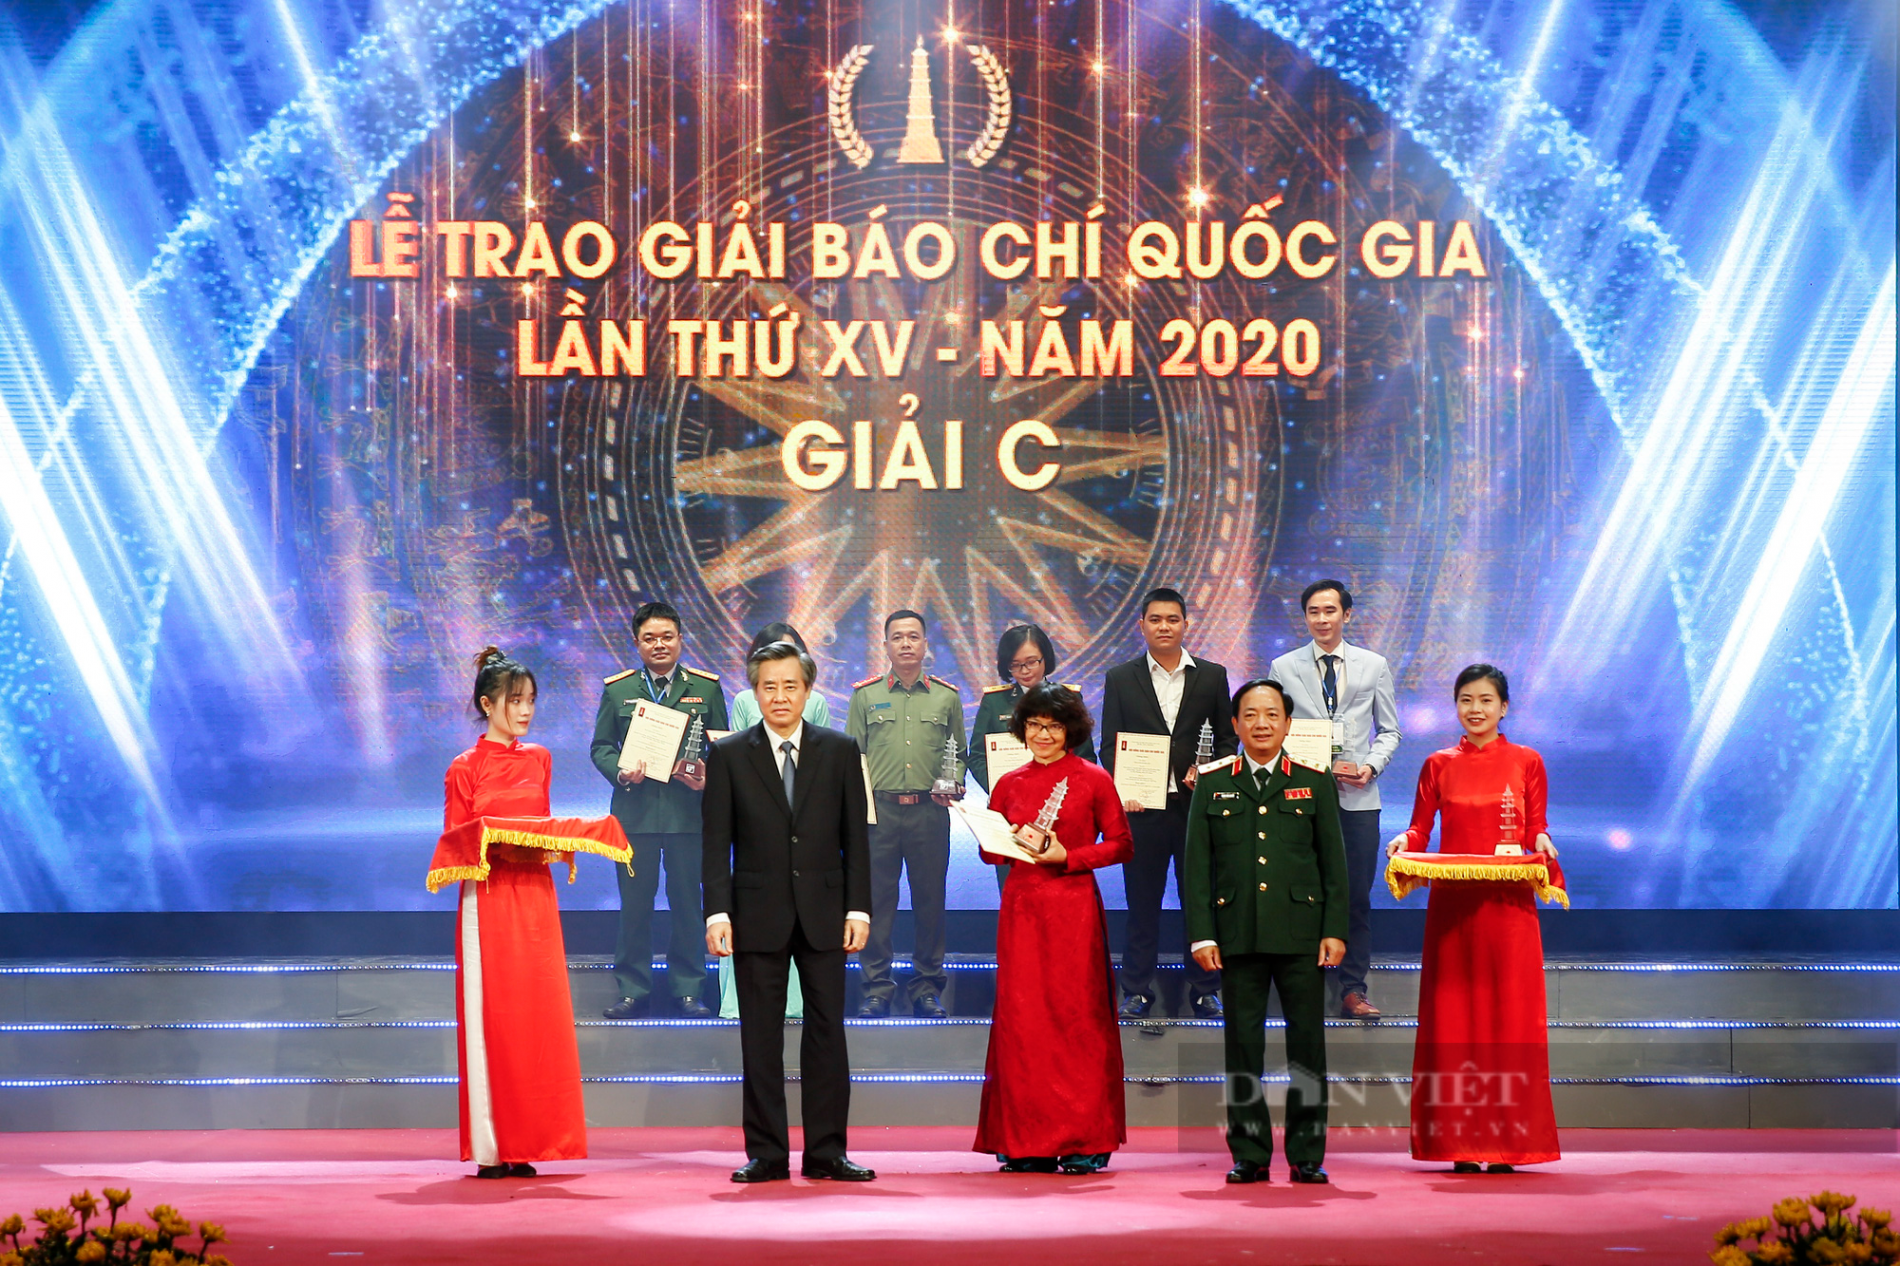 Ảnh: Chủ tịch nước Nguyễn Xuân Phúc dự Lễ trao Giải báo chí quốc gia lần thứ XV - năm 2020 - Ảnh 8.